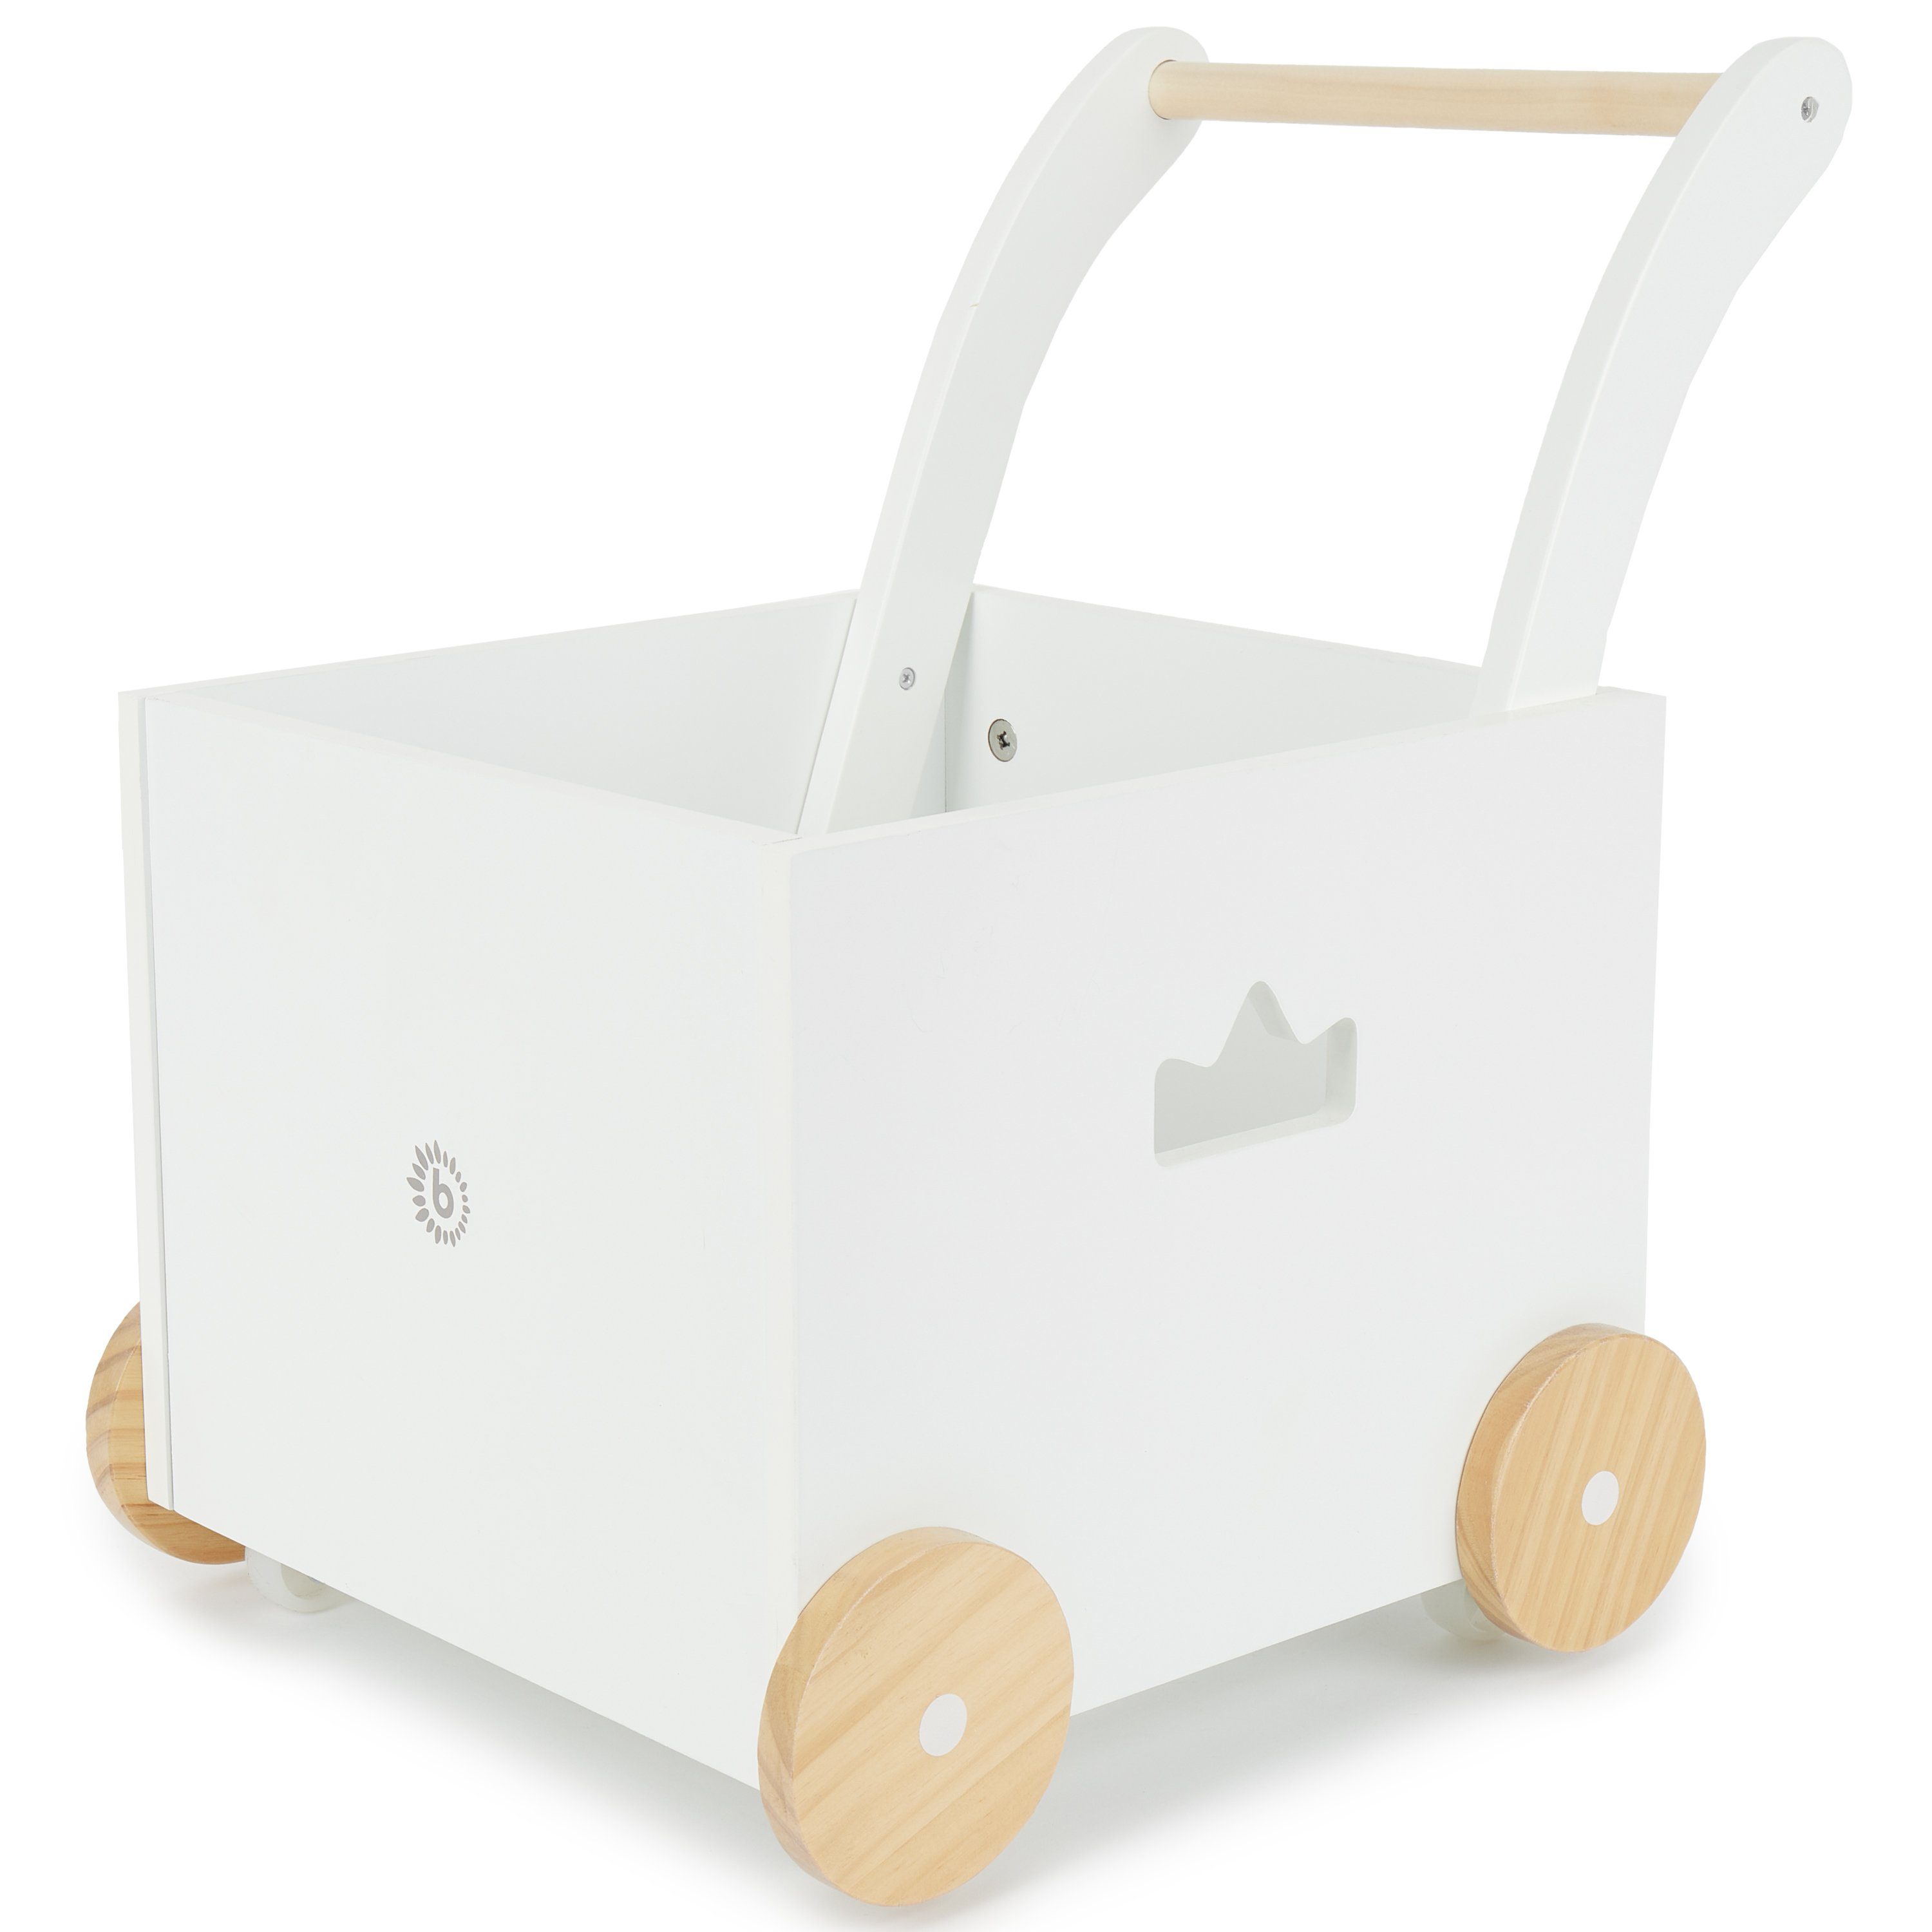 BIECO Lauflernhilfe Bieco Lauflernwagen Gehhilfe für Baby Lauflernhilfe Holz Baby mit ab Babys Design Stauraum Lauflernhilfe Babys Laufwagen Multifunktionale Baby Jahr für schlichtem in Laufwagen 1